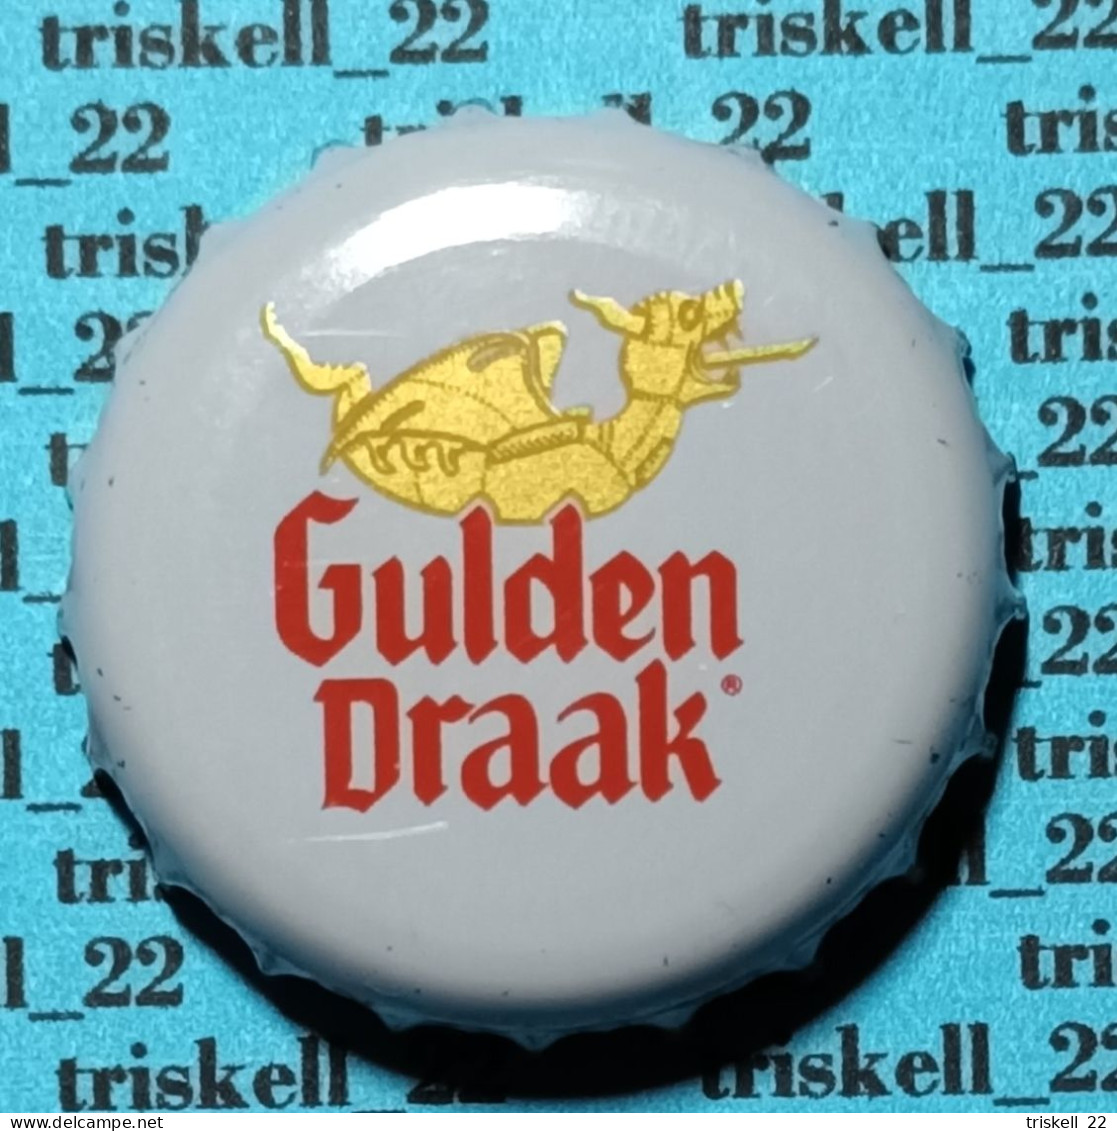 Gulden Draak Classic    Mev27 - Beer